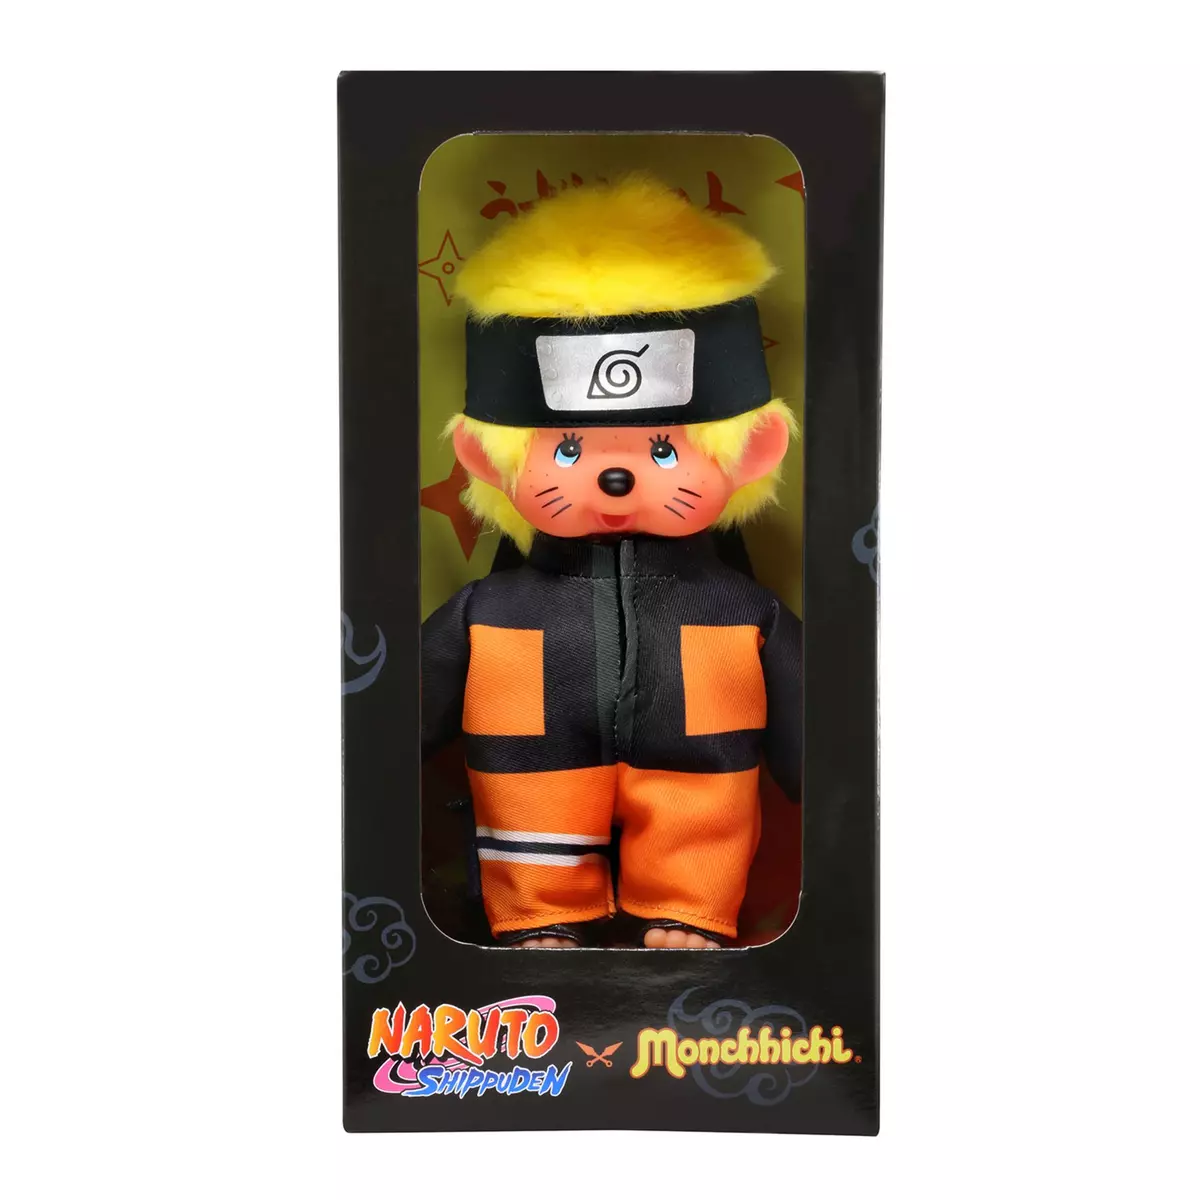 BANDAI Figurine Monchichi Naruto